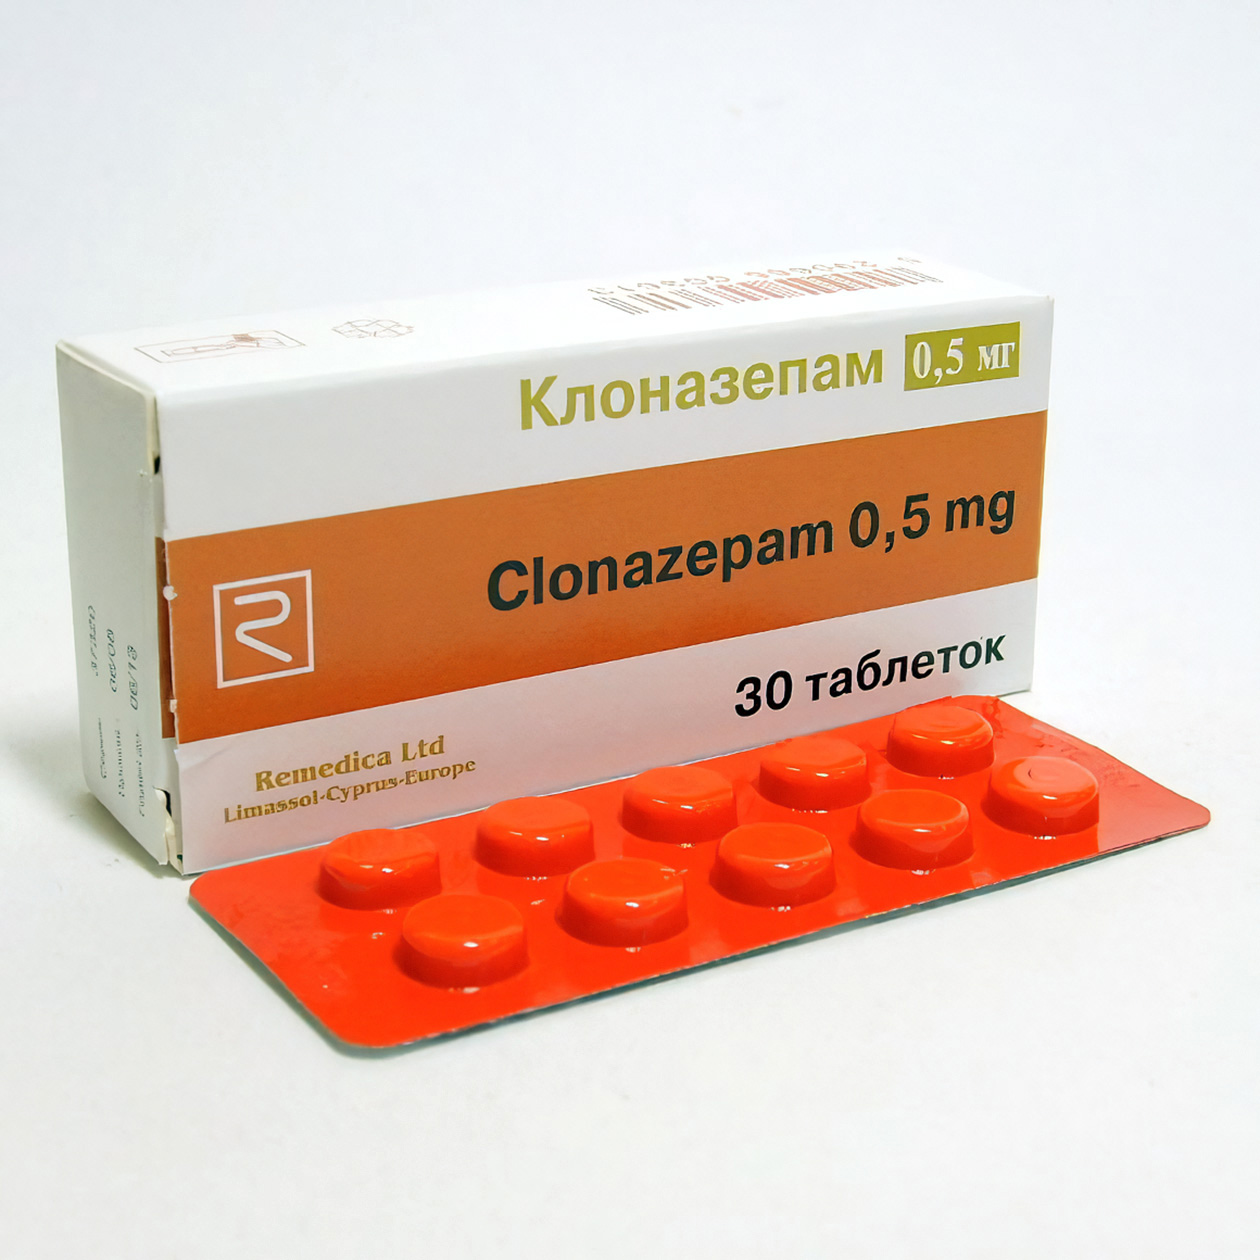 Стоимость одной упаковки из 30 таблеток с дозировкой 0,5 мг начинается от 98 ₽. Источник: rigla.ru